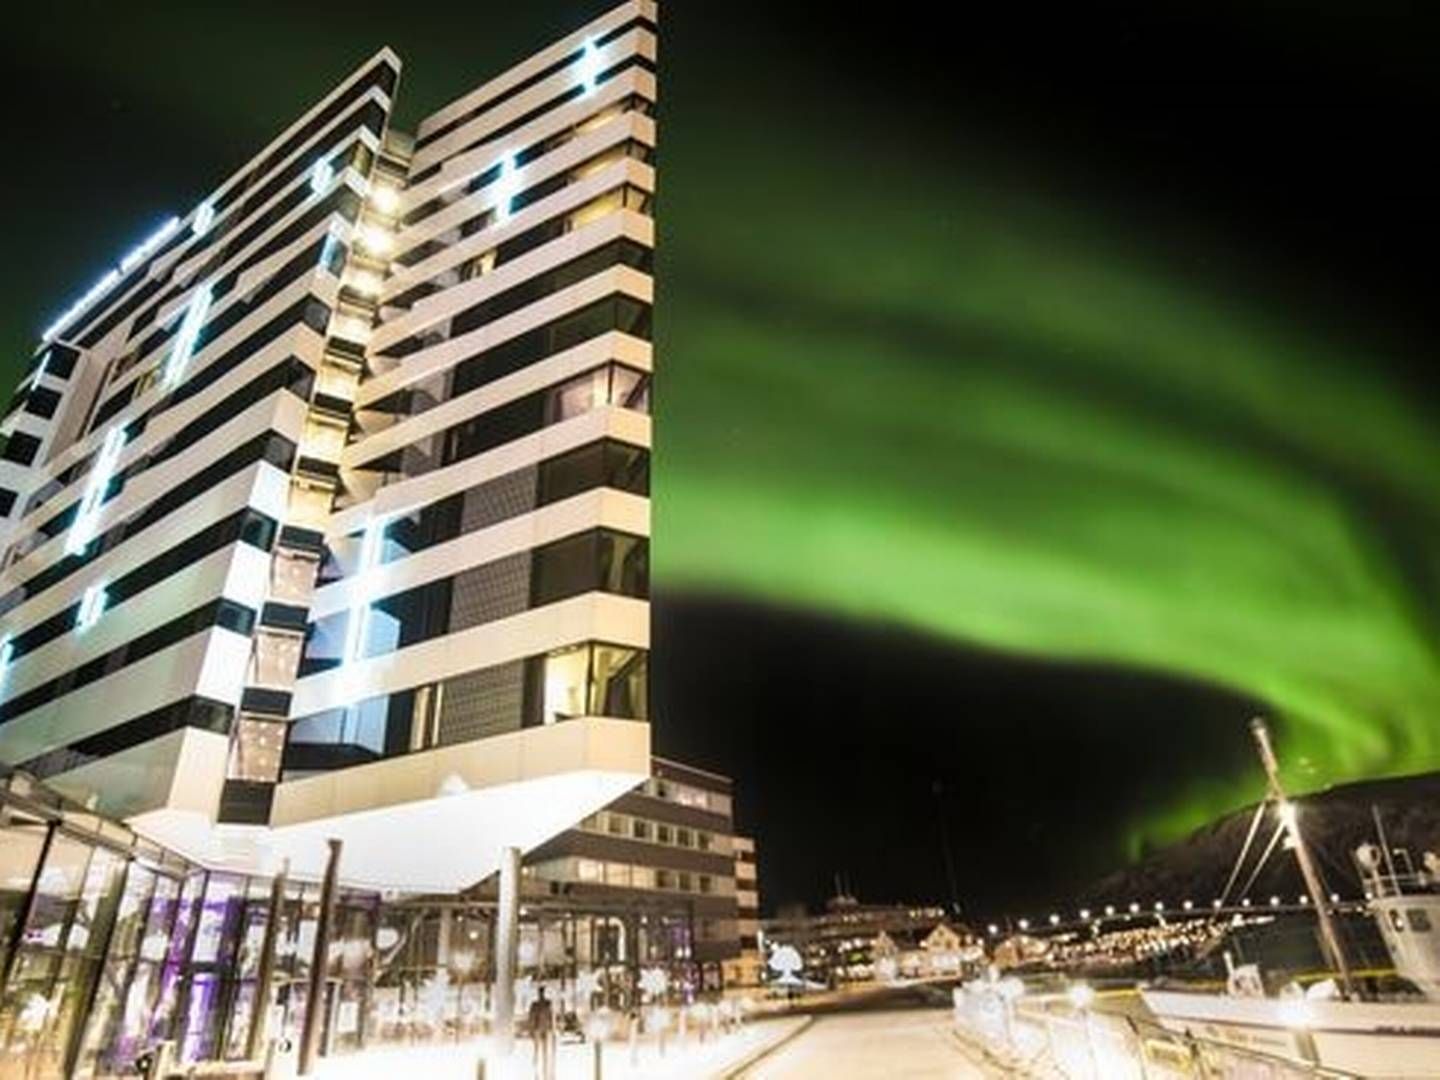 LANDEMERKE: Clarion Hotel The Edge ligger ved vannkanten i Tromsø og er blitt et landemerke i byen. | Foto: Anne-Marie Forker